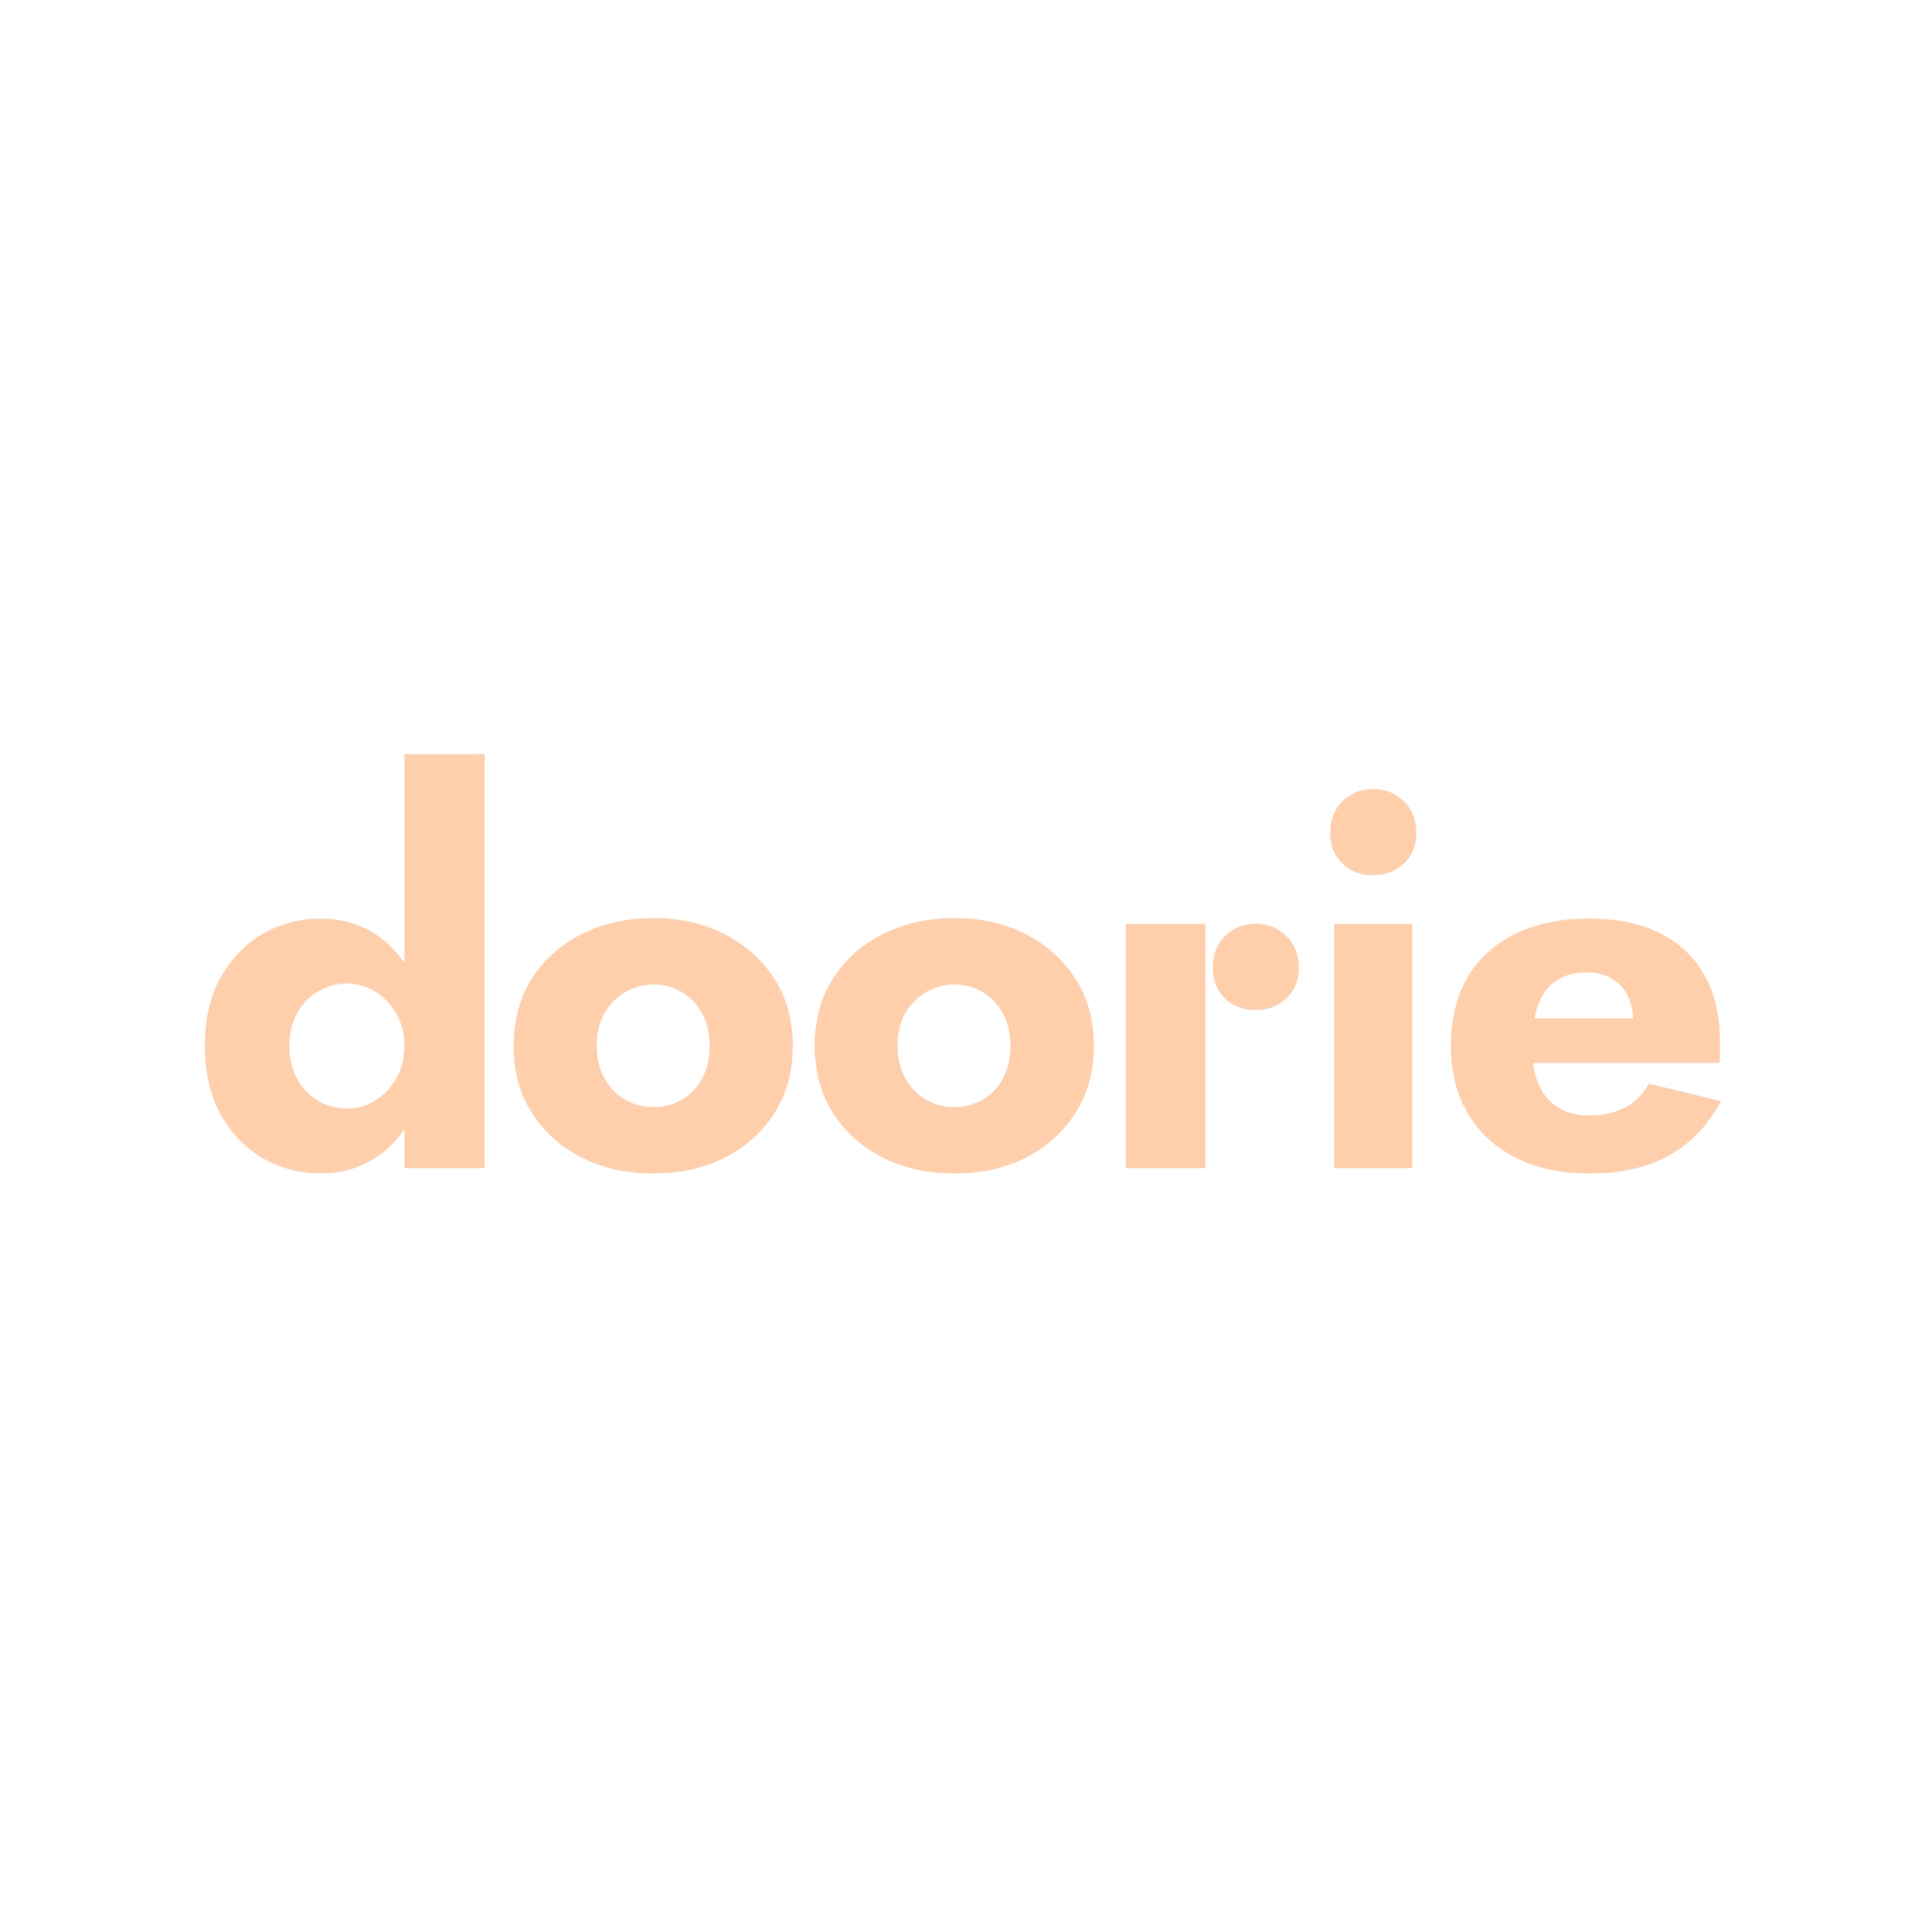 doorie_placeholder